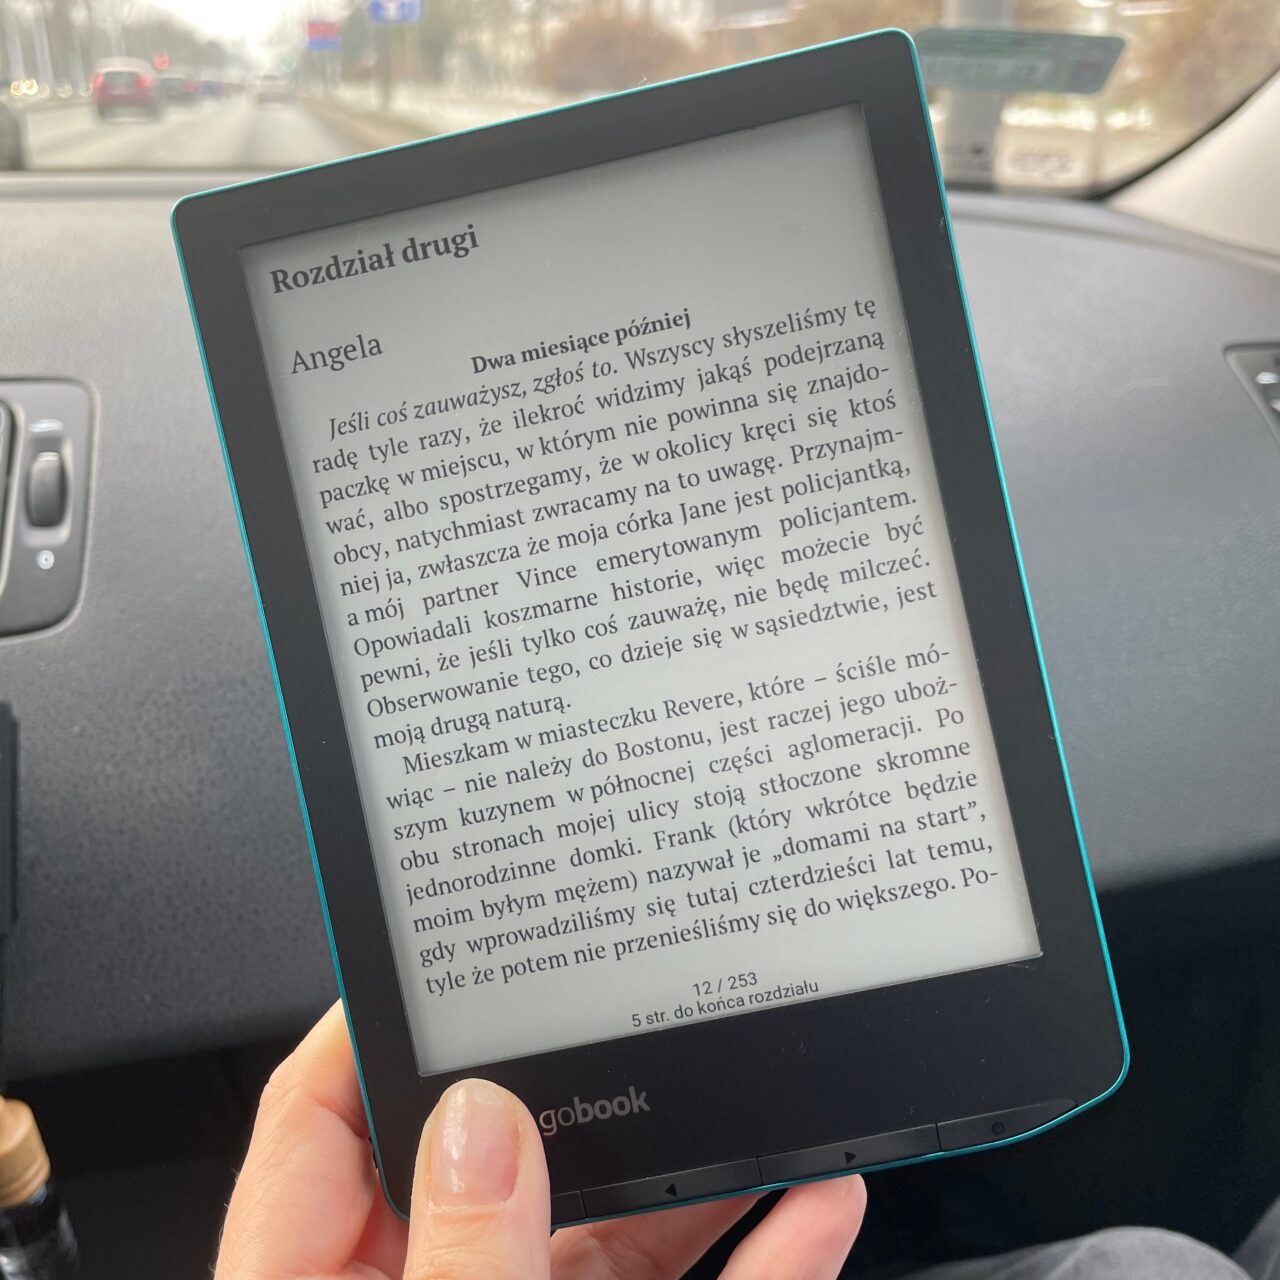 Czytanie książki elektronicznej na czytniku e-book w samochodzie, wyświetlany jest tekst w języku polskim na ekranie.